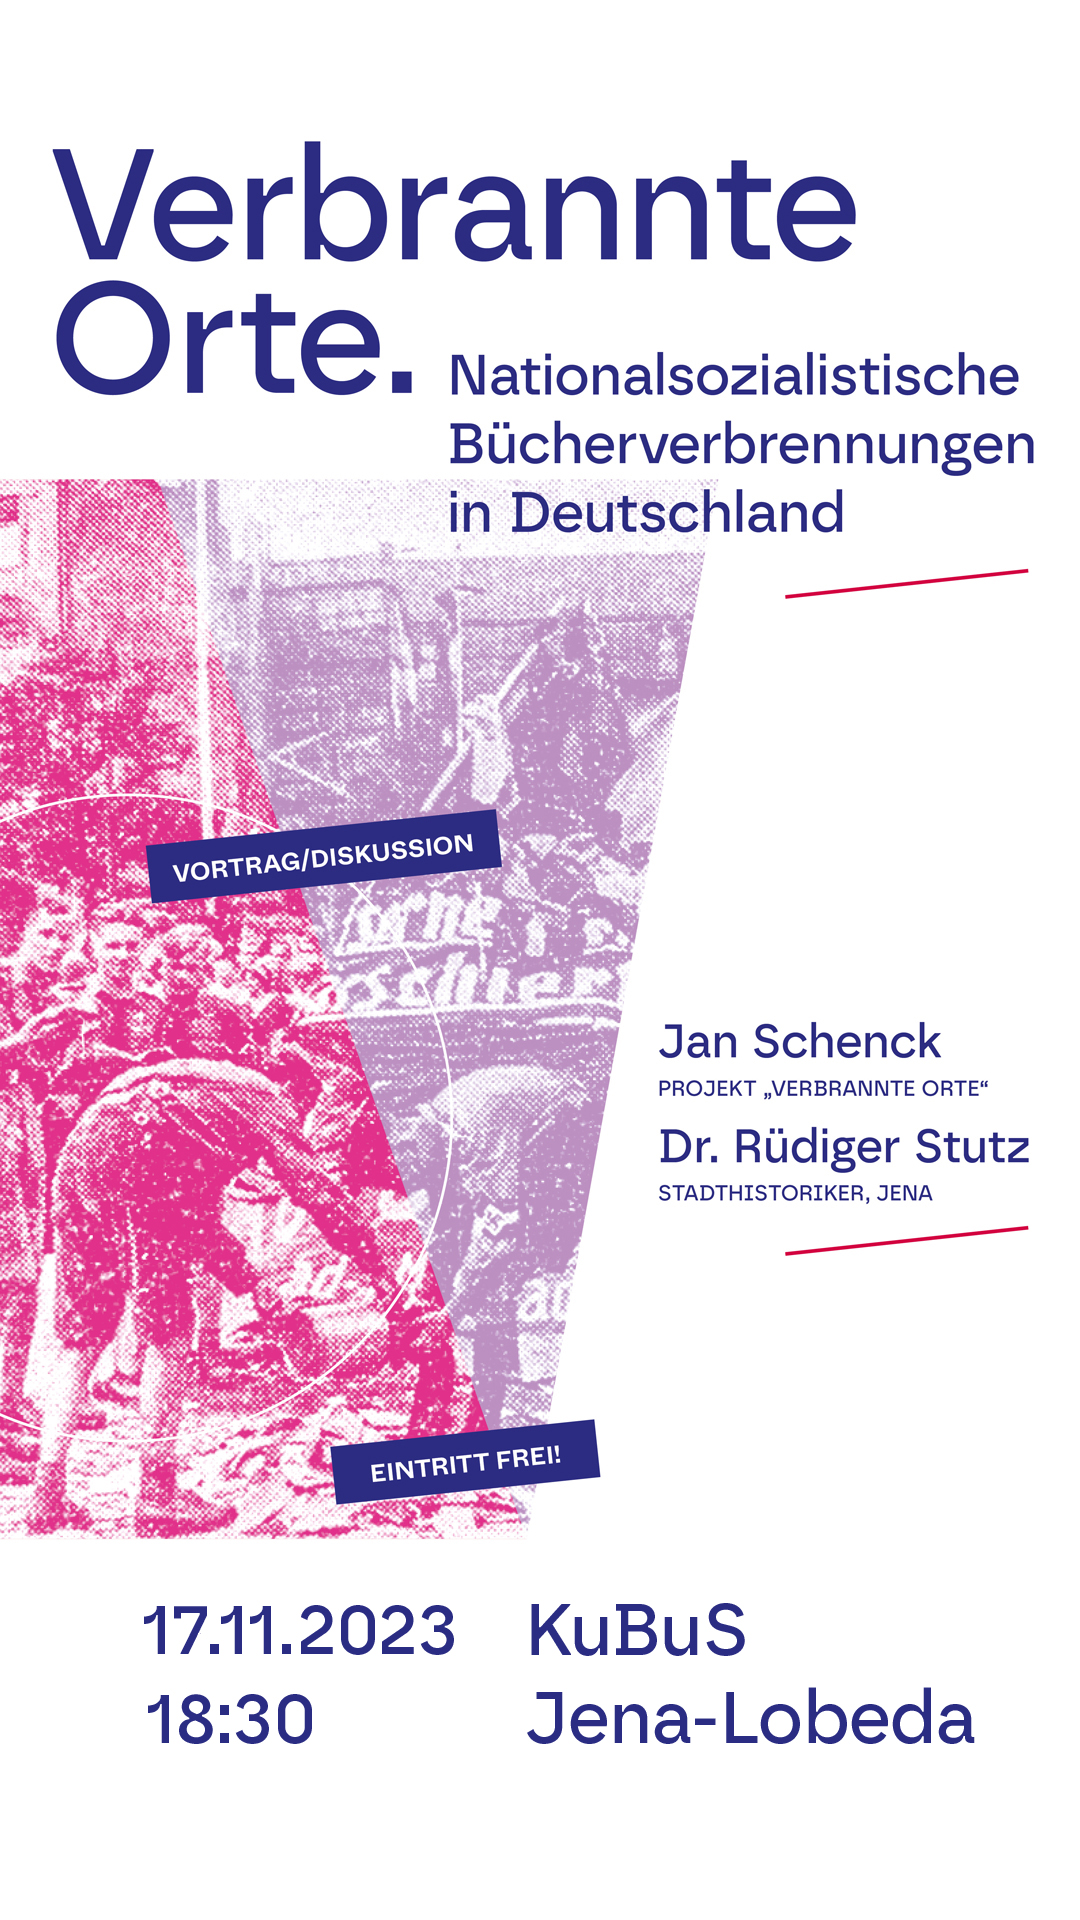 Verbrannte Orte - Nationalsozialistische Bücherverbrennung in Jena - Vortrag/Diskussion